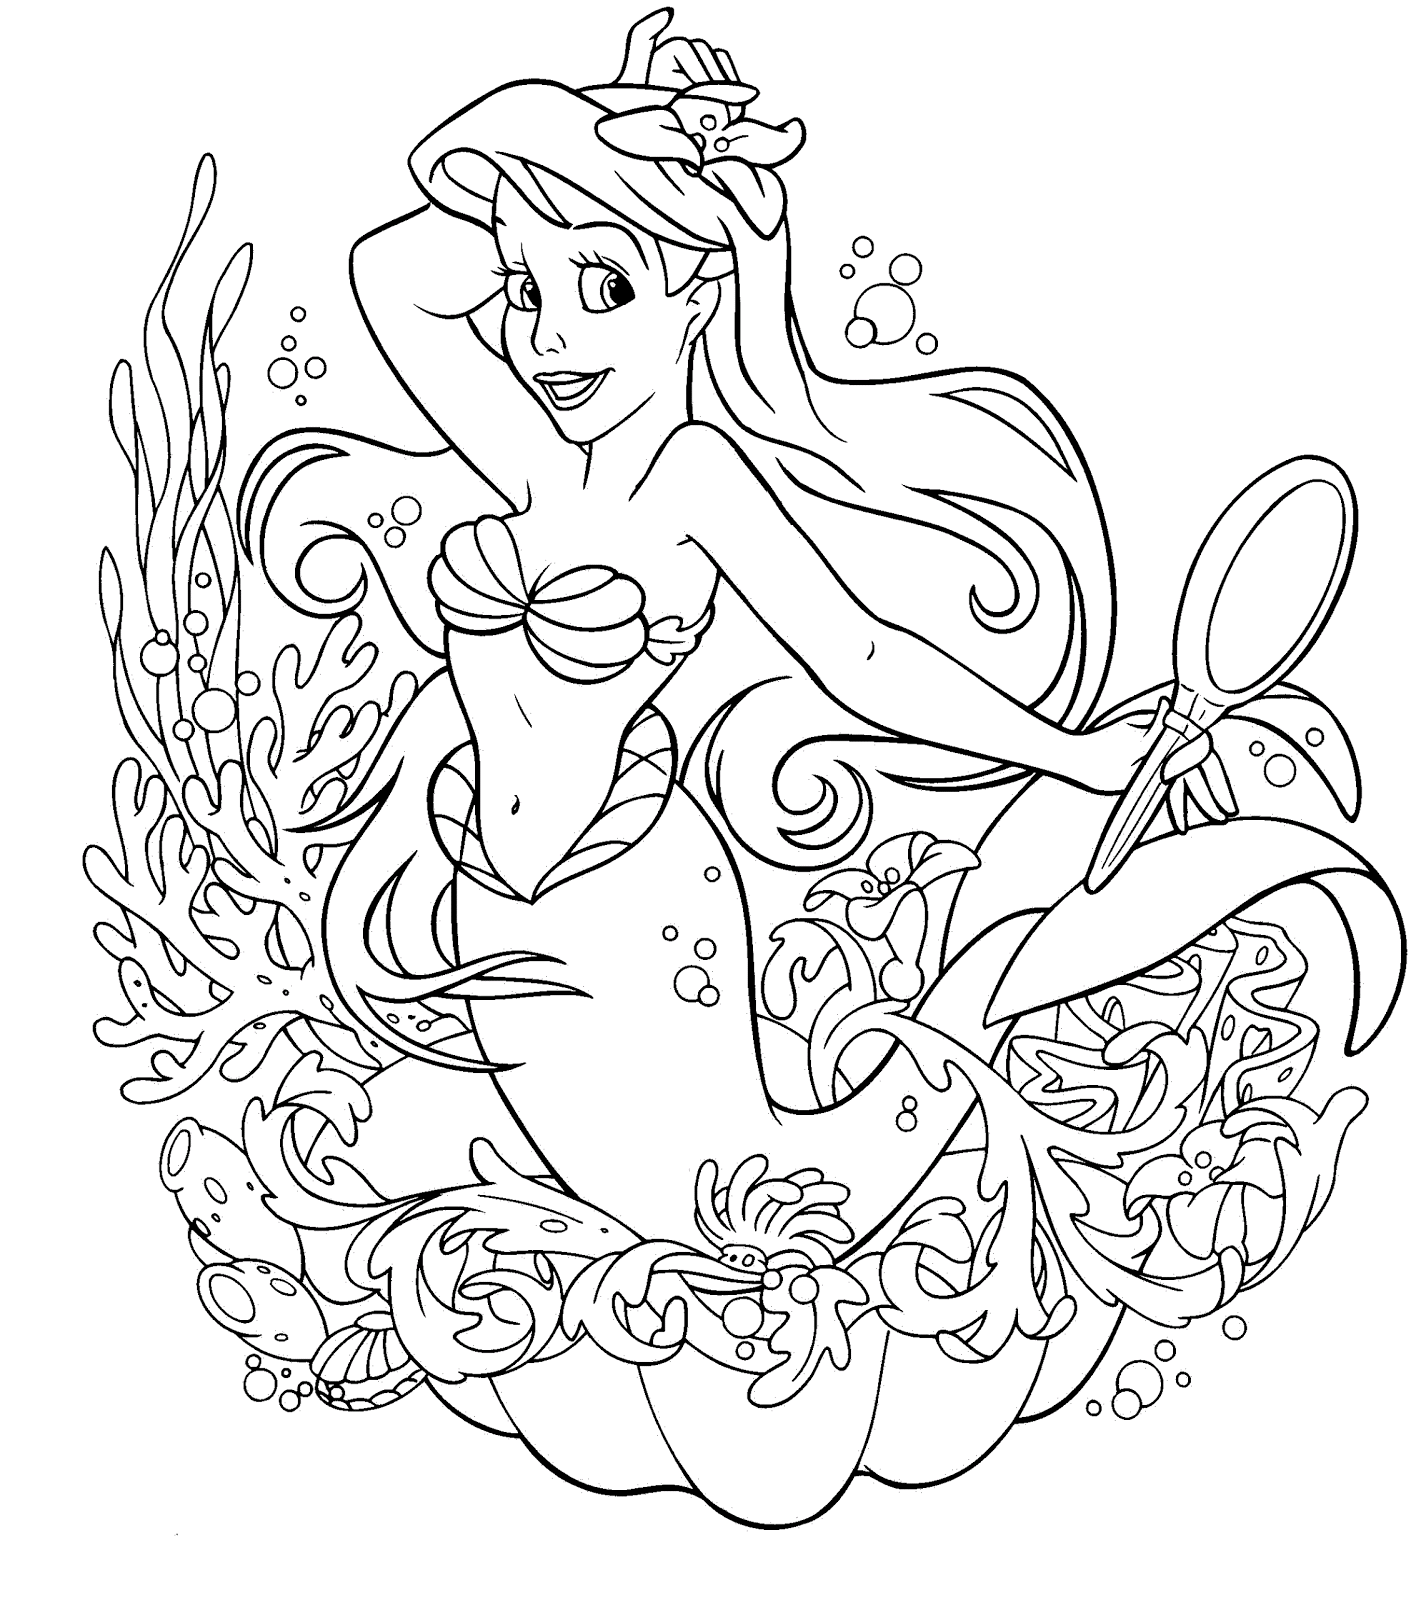 mermaid printable coloring pages mermaid coloring page free printable coloring pages coloring pages printable mermaid 